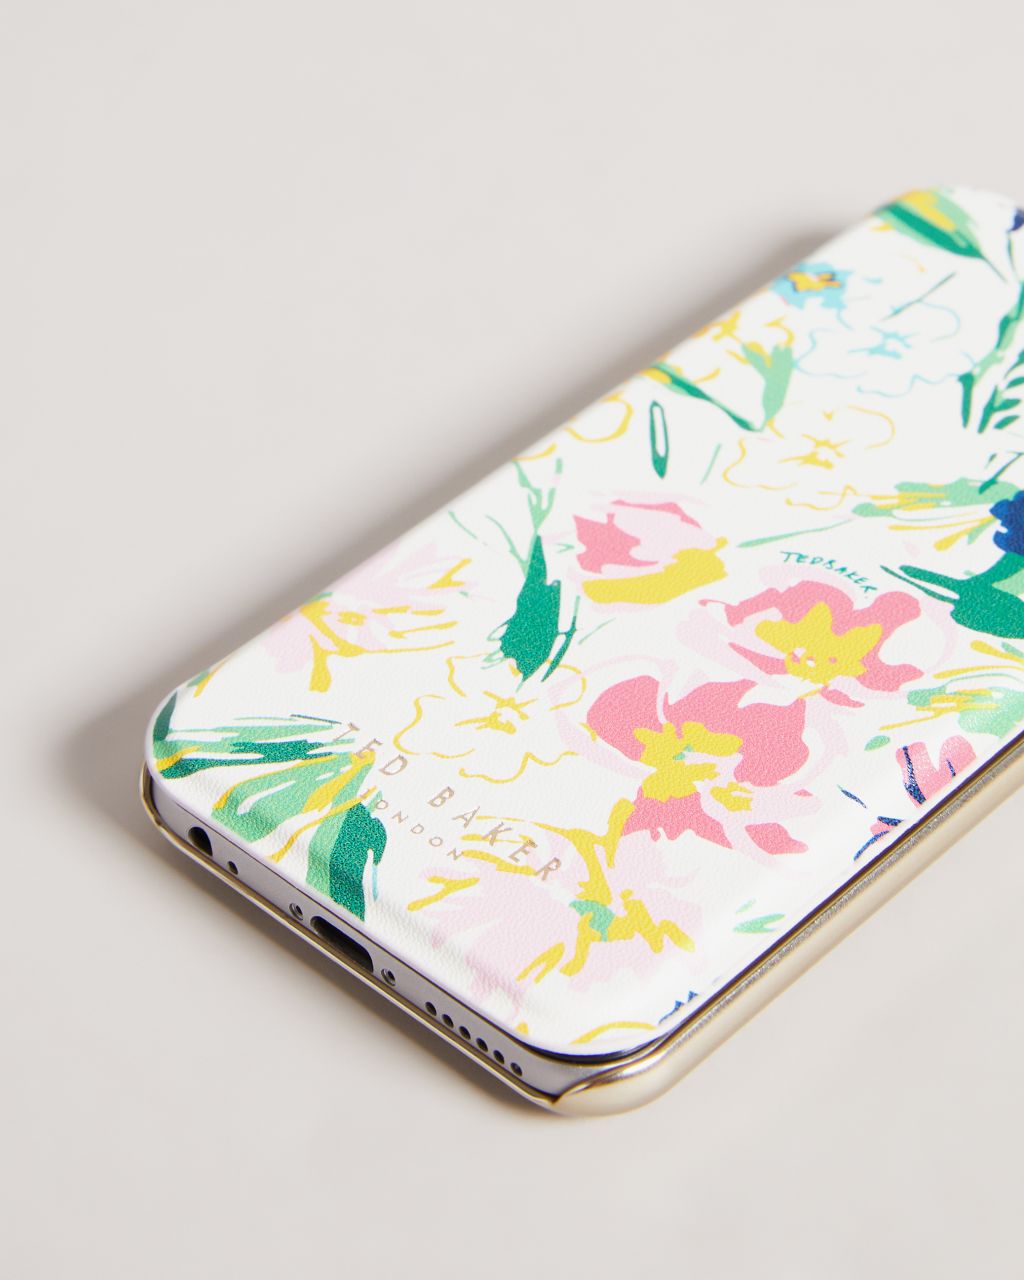 Sketchy Magnolia iPhone 6 7 8 SE Mirror Case